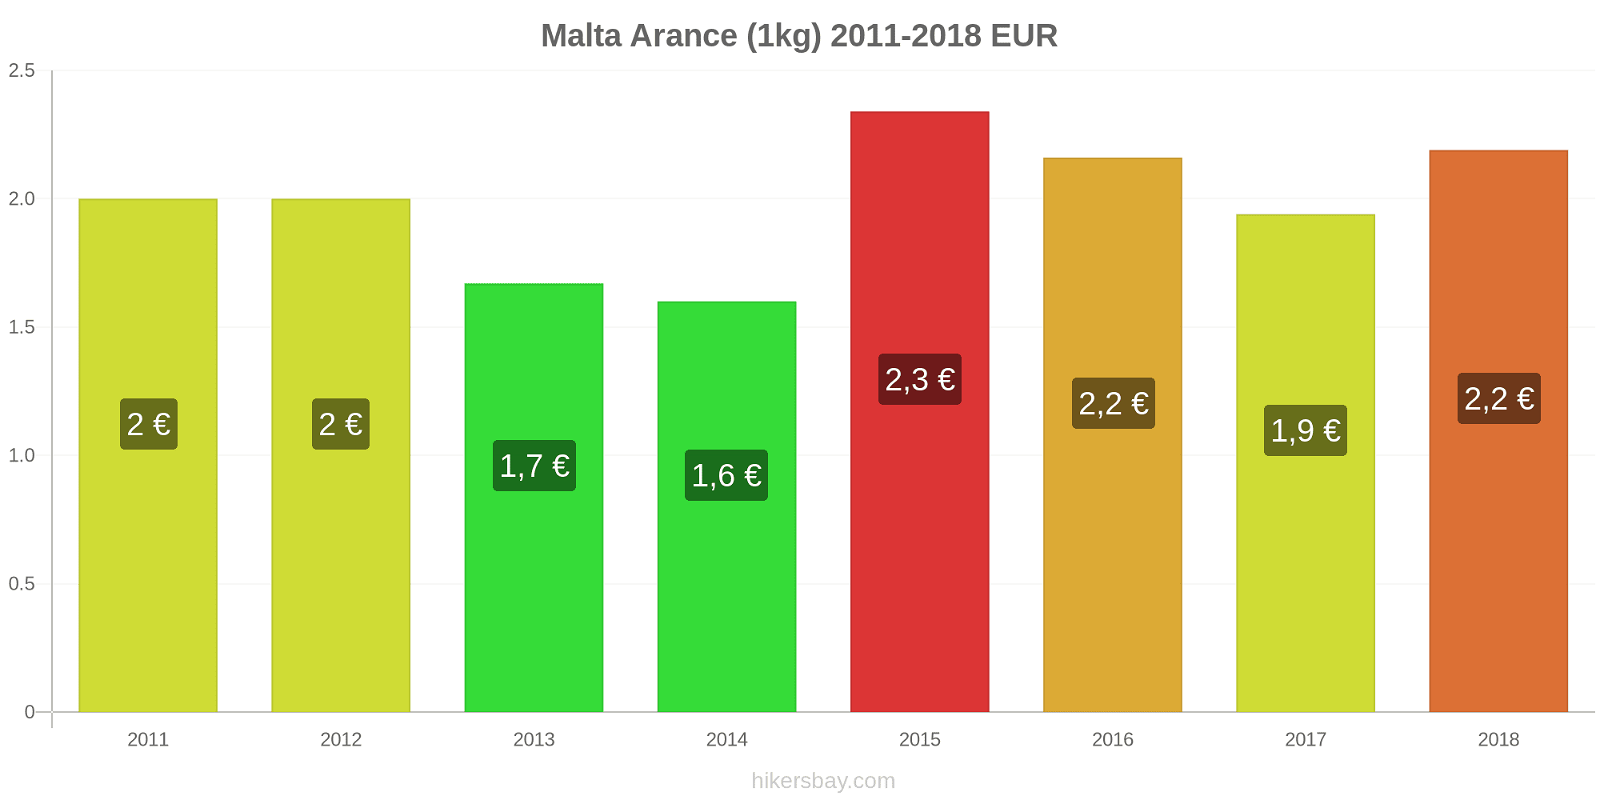 Malta cambi di prezzo Arance (1kg) hikersbay.com